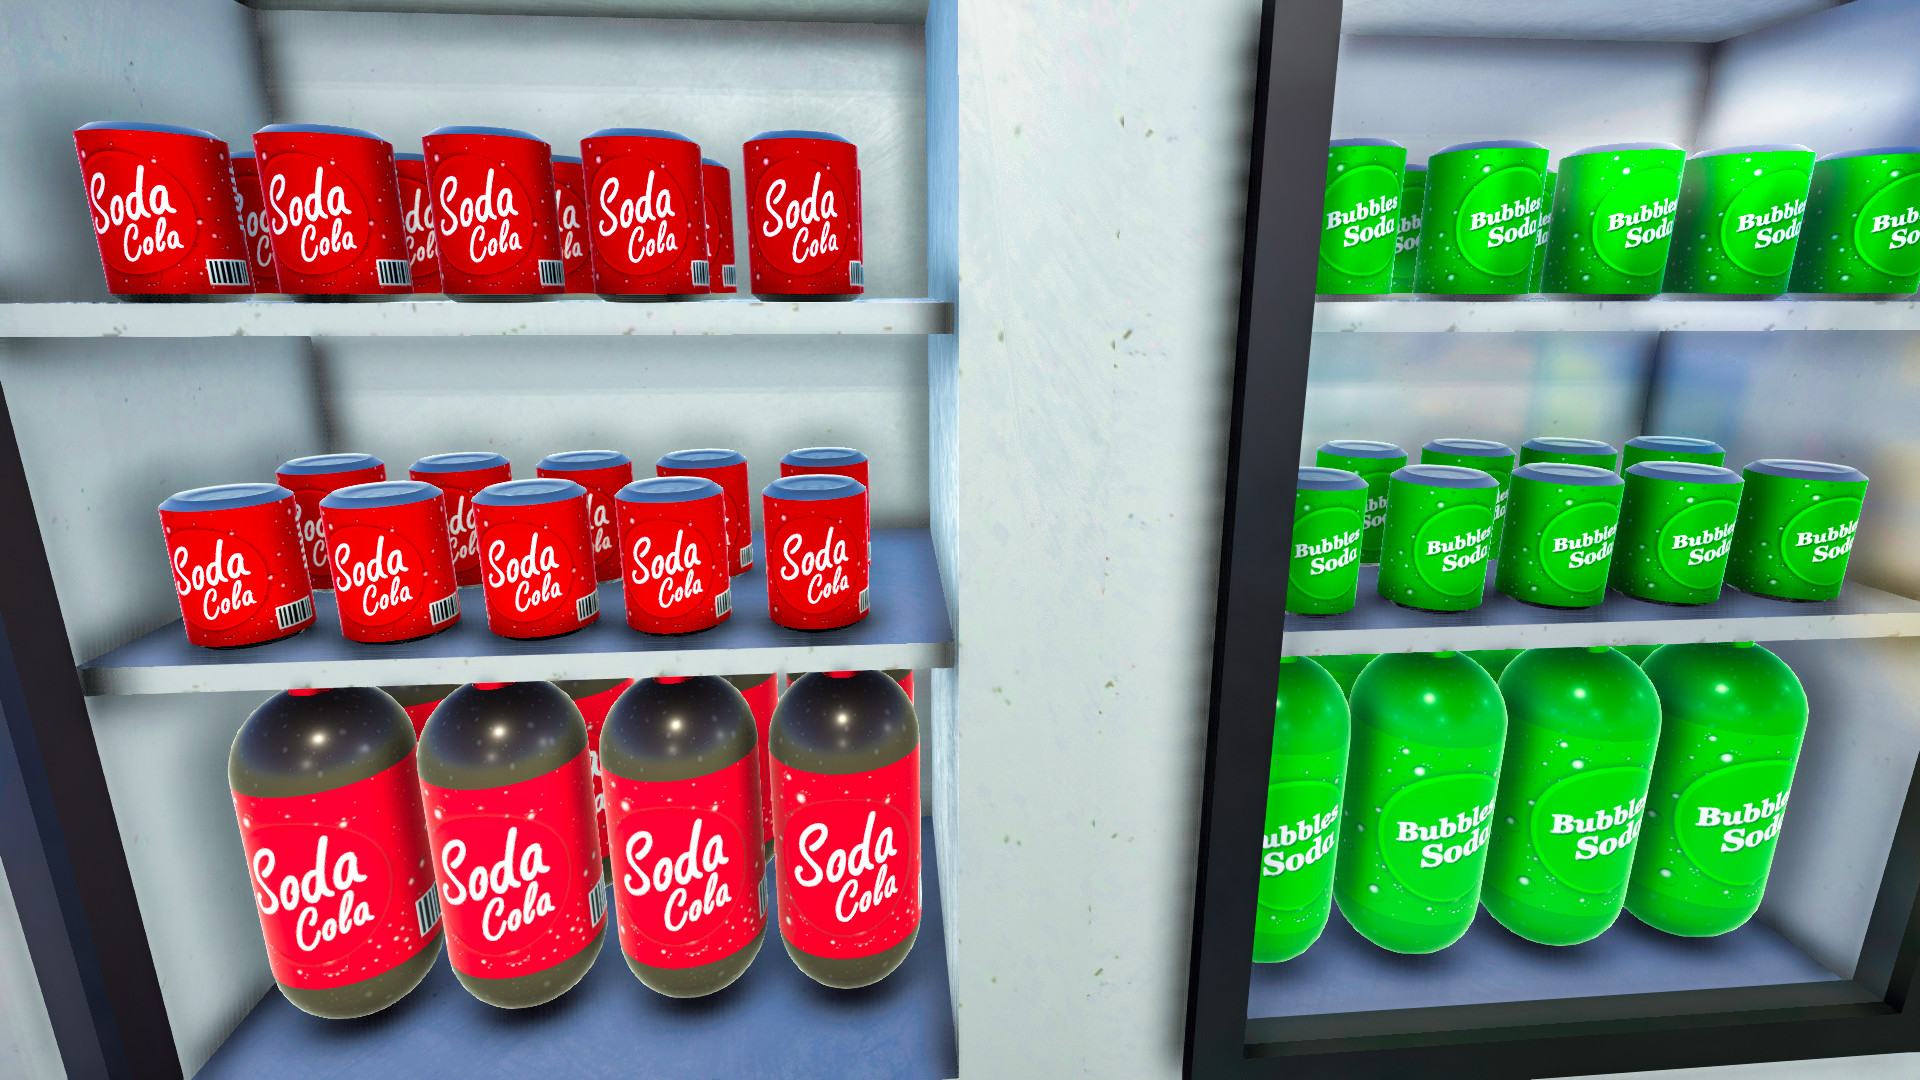 Wendy’s Mart 3D screenshot